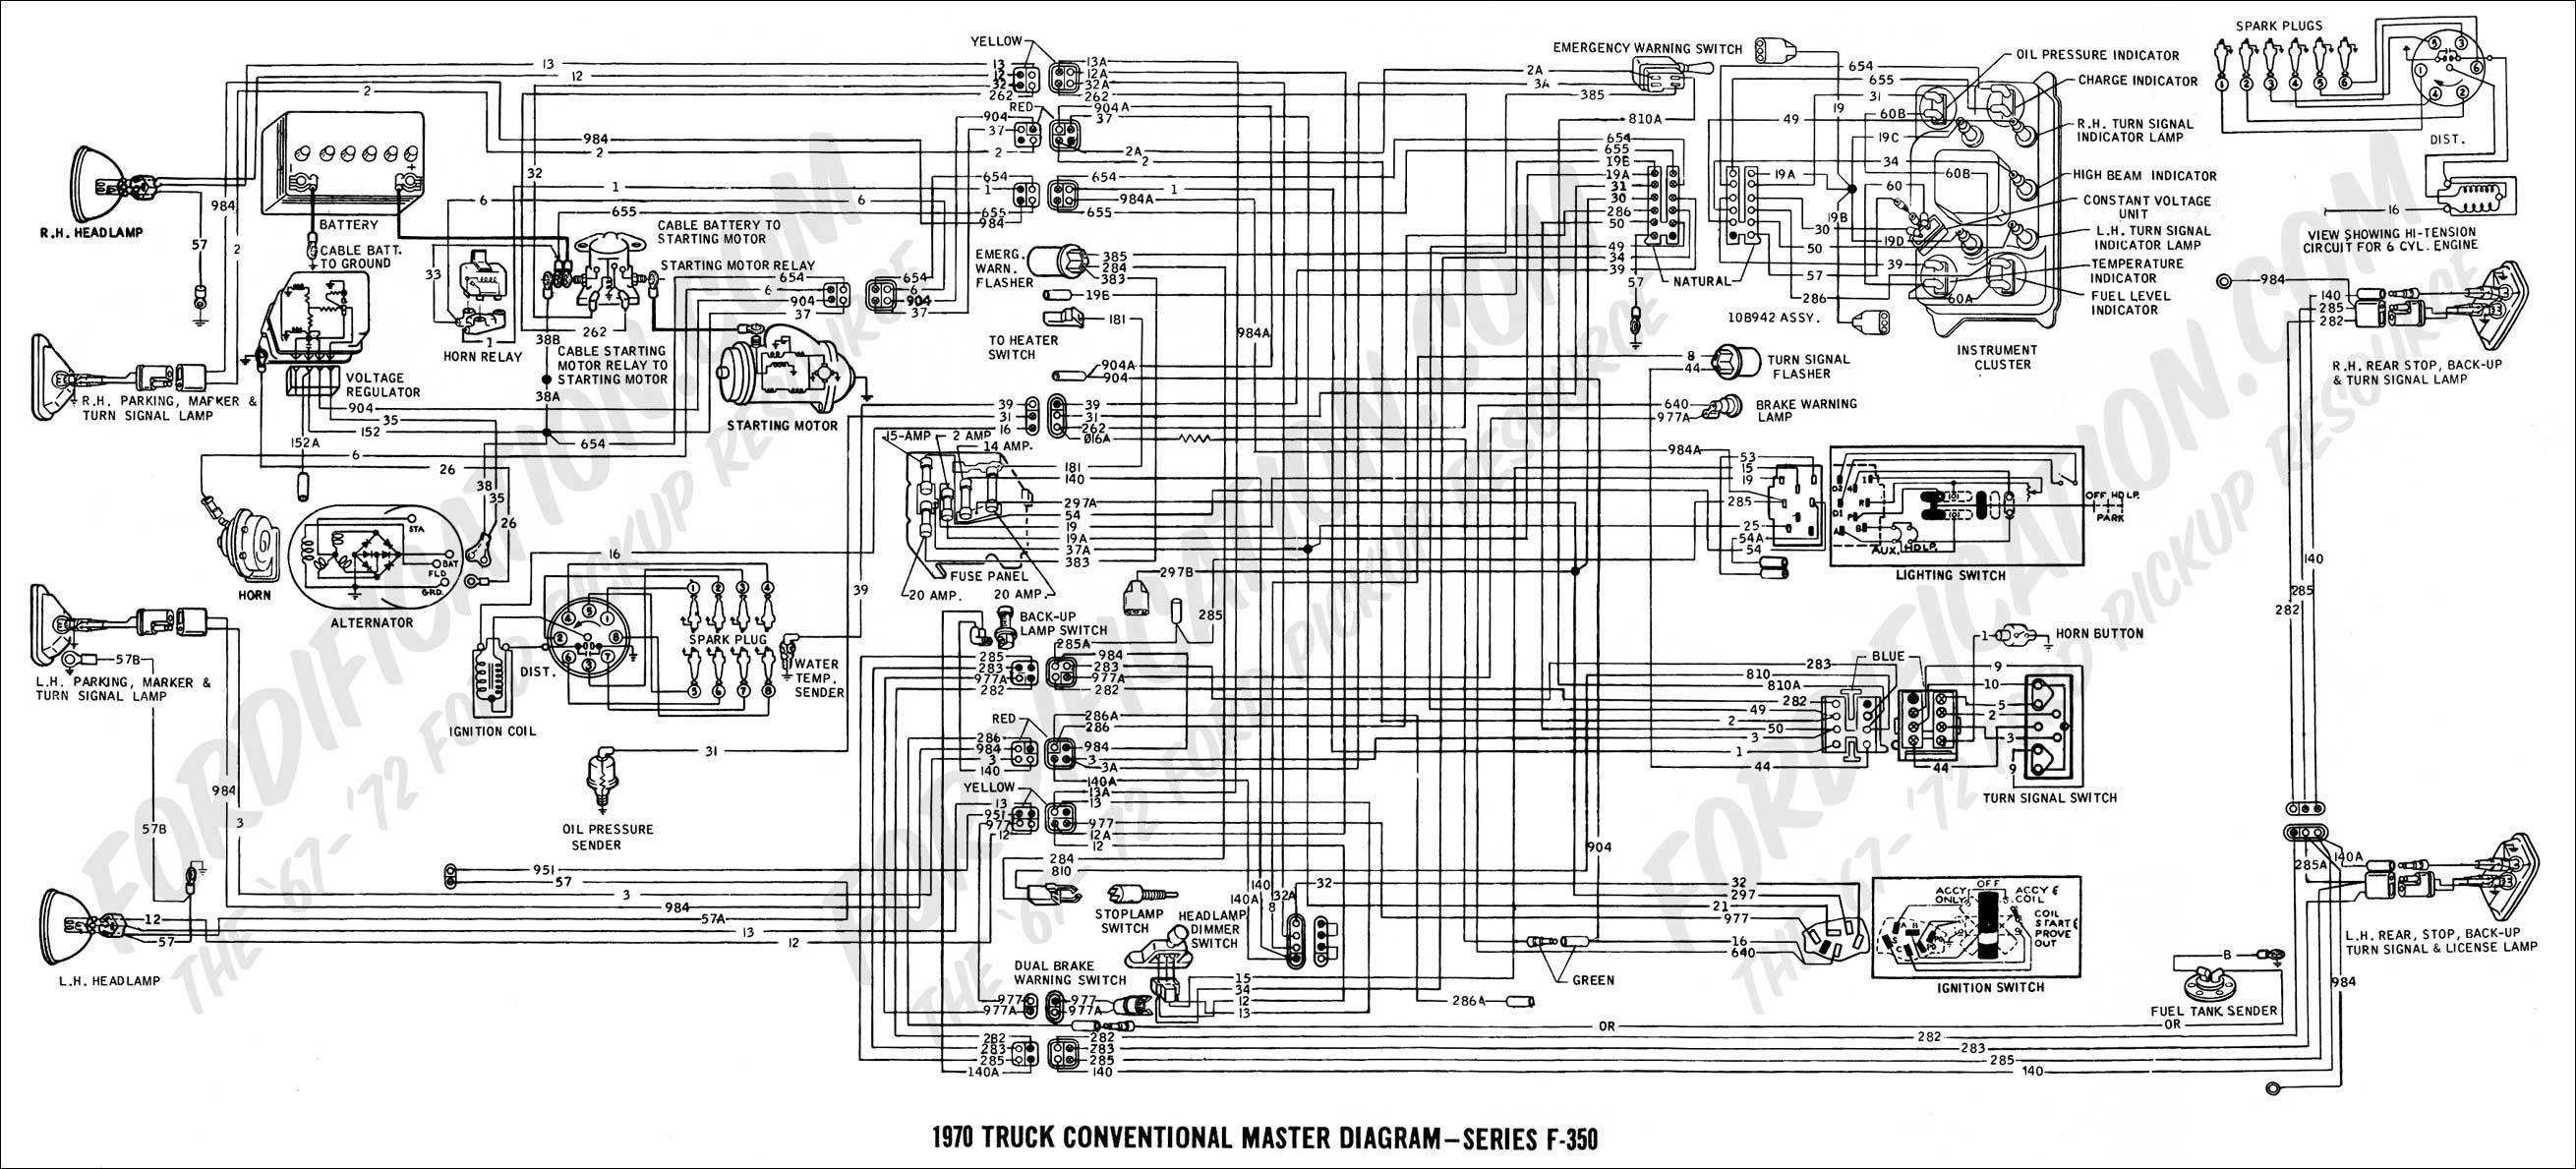 2000 7 3 glow plug relay wiring diagram save 2000 ford f350 sel rh jasonaparicio co 1988 Ford F 350 Wiring Diagram Ford Super Duty Wiring Diagram